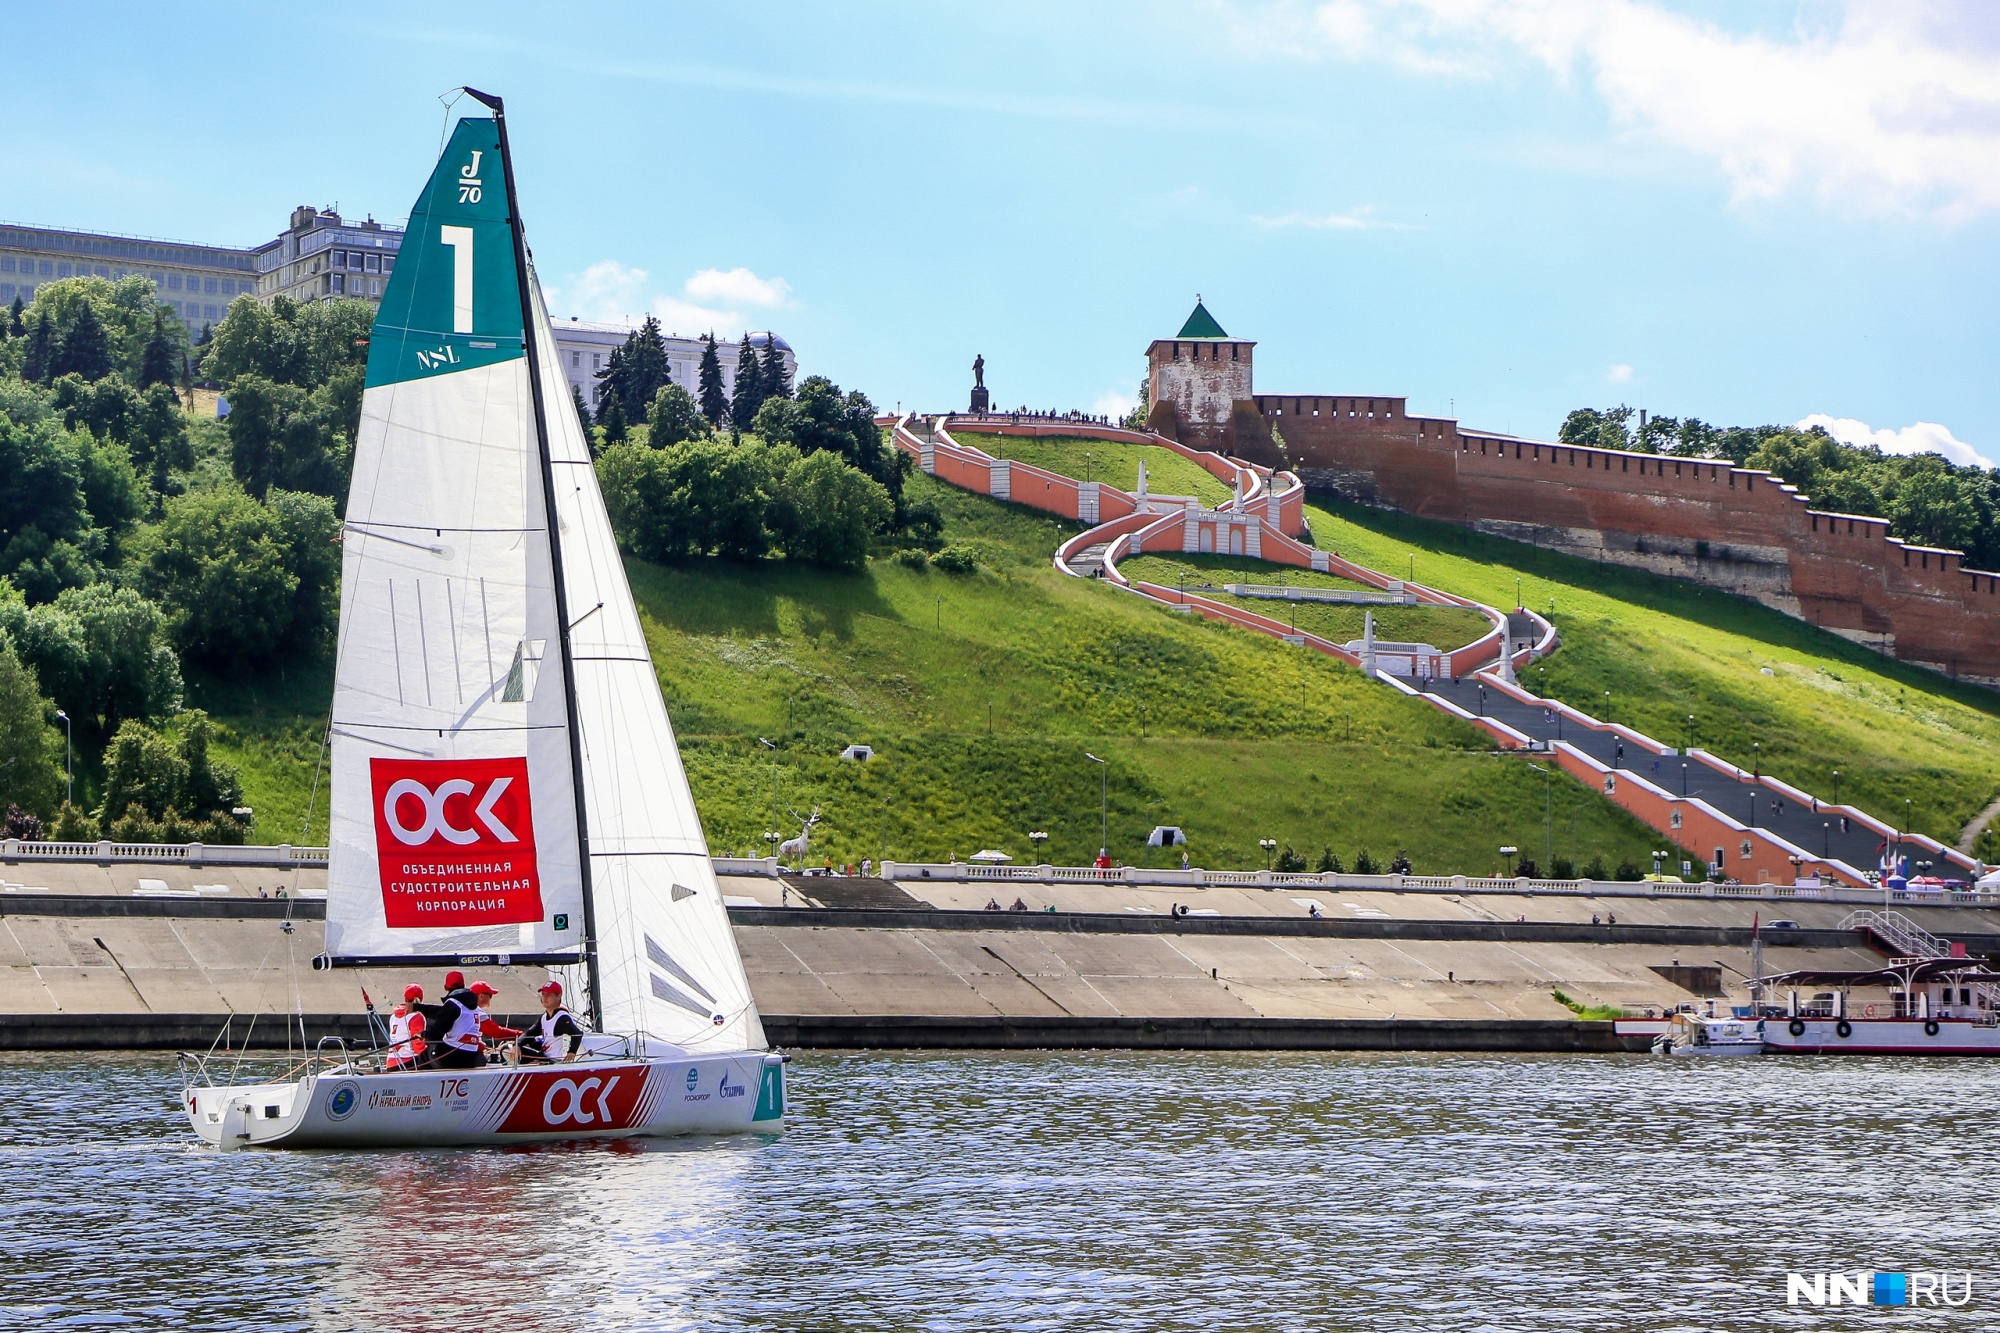 Парады яхт, аэростатов и байкеров: опубликована полная программа Дня города в Нижнем Новгороде